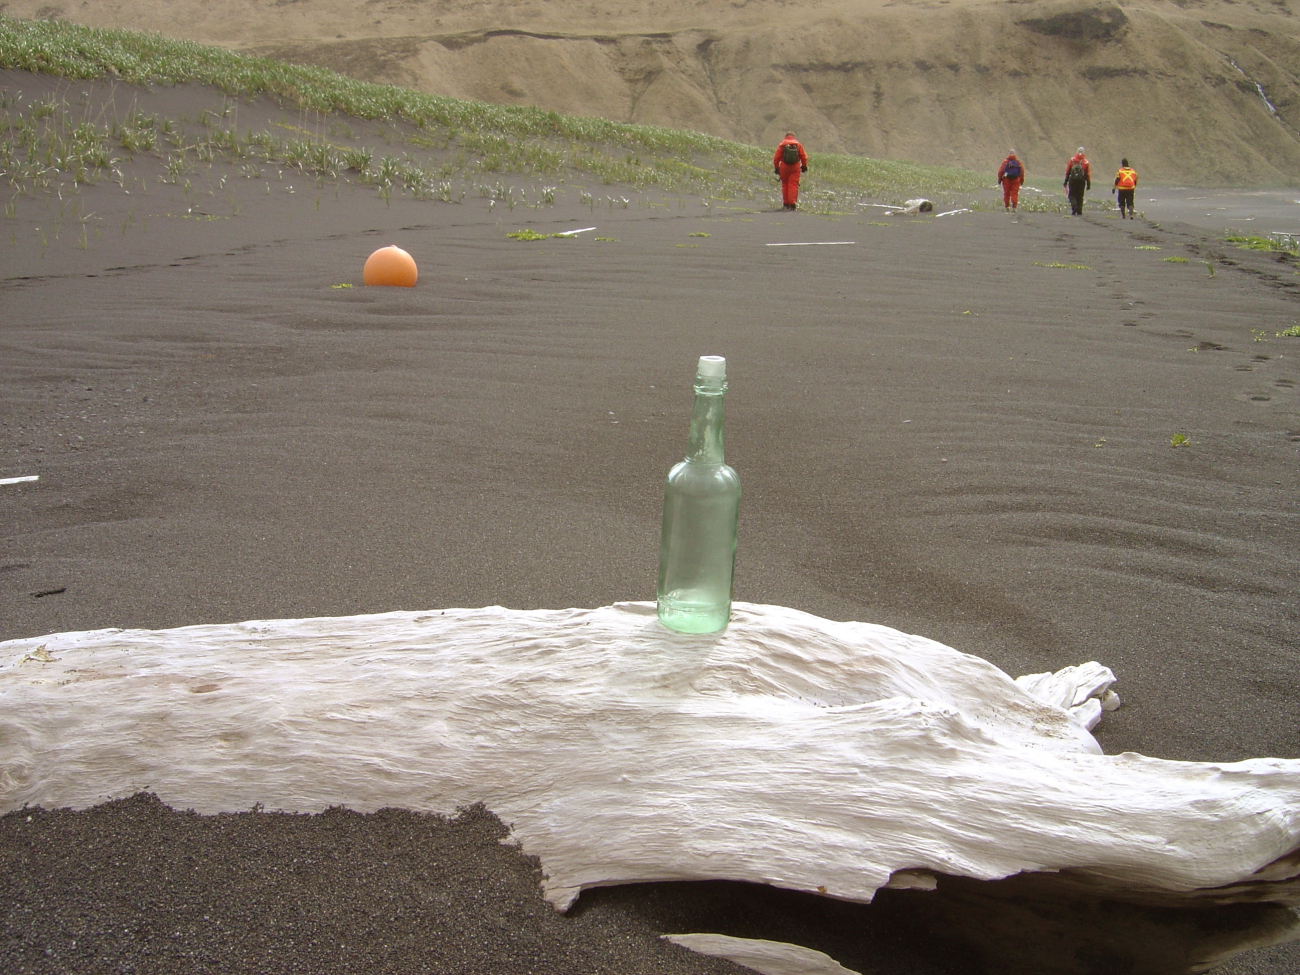 Bottle found during beach debris survey